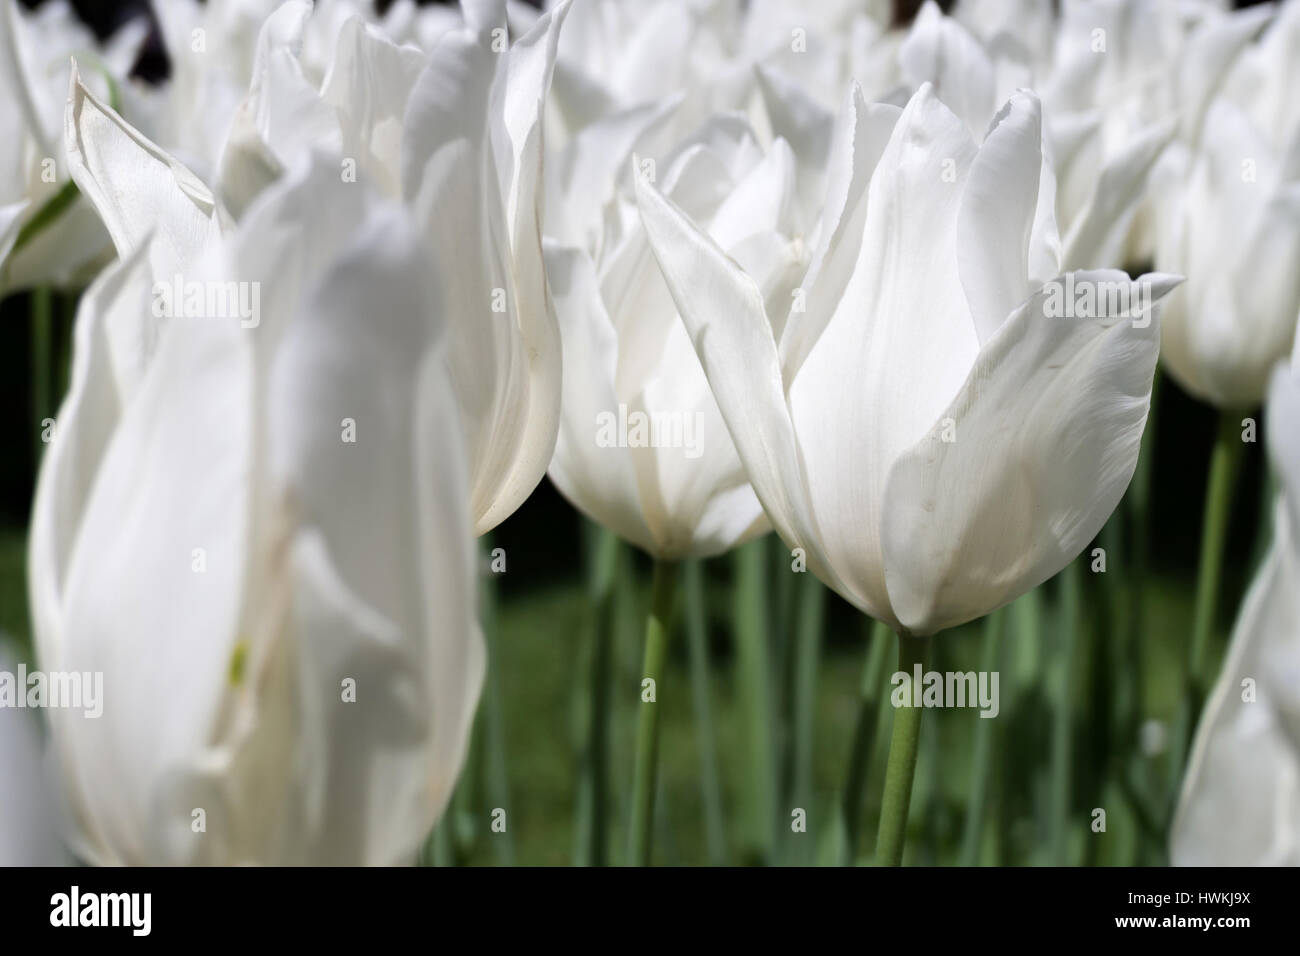 Lilie blühenden Tulpen (Sorte "White bleiben") Stockfoto